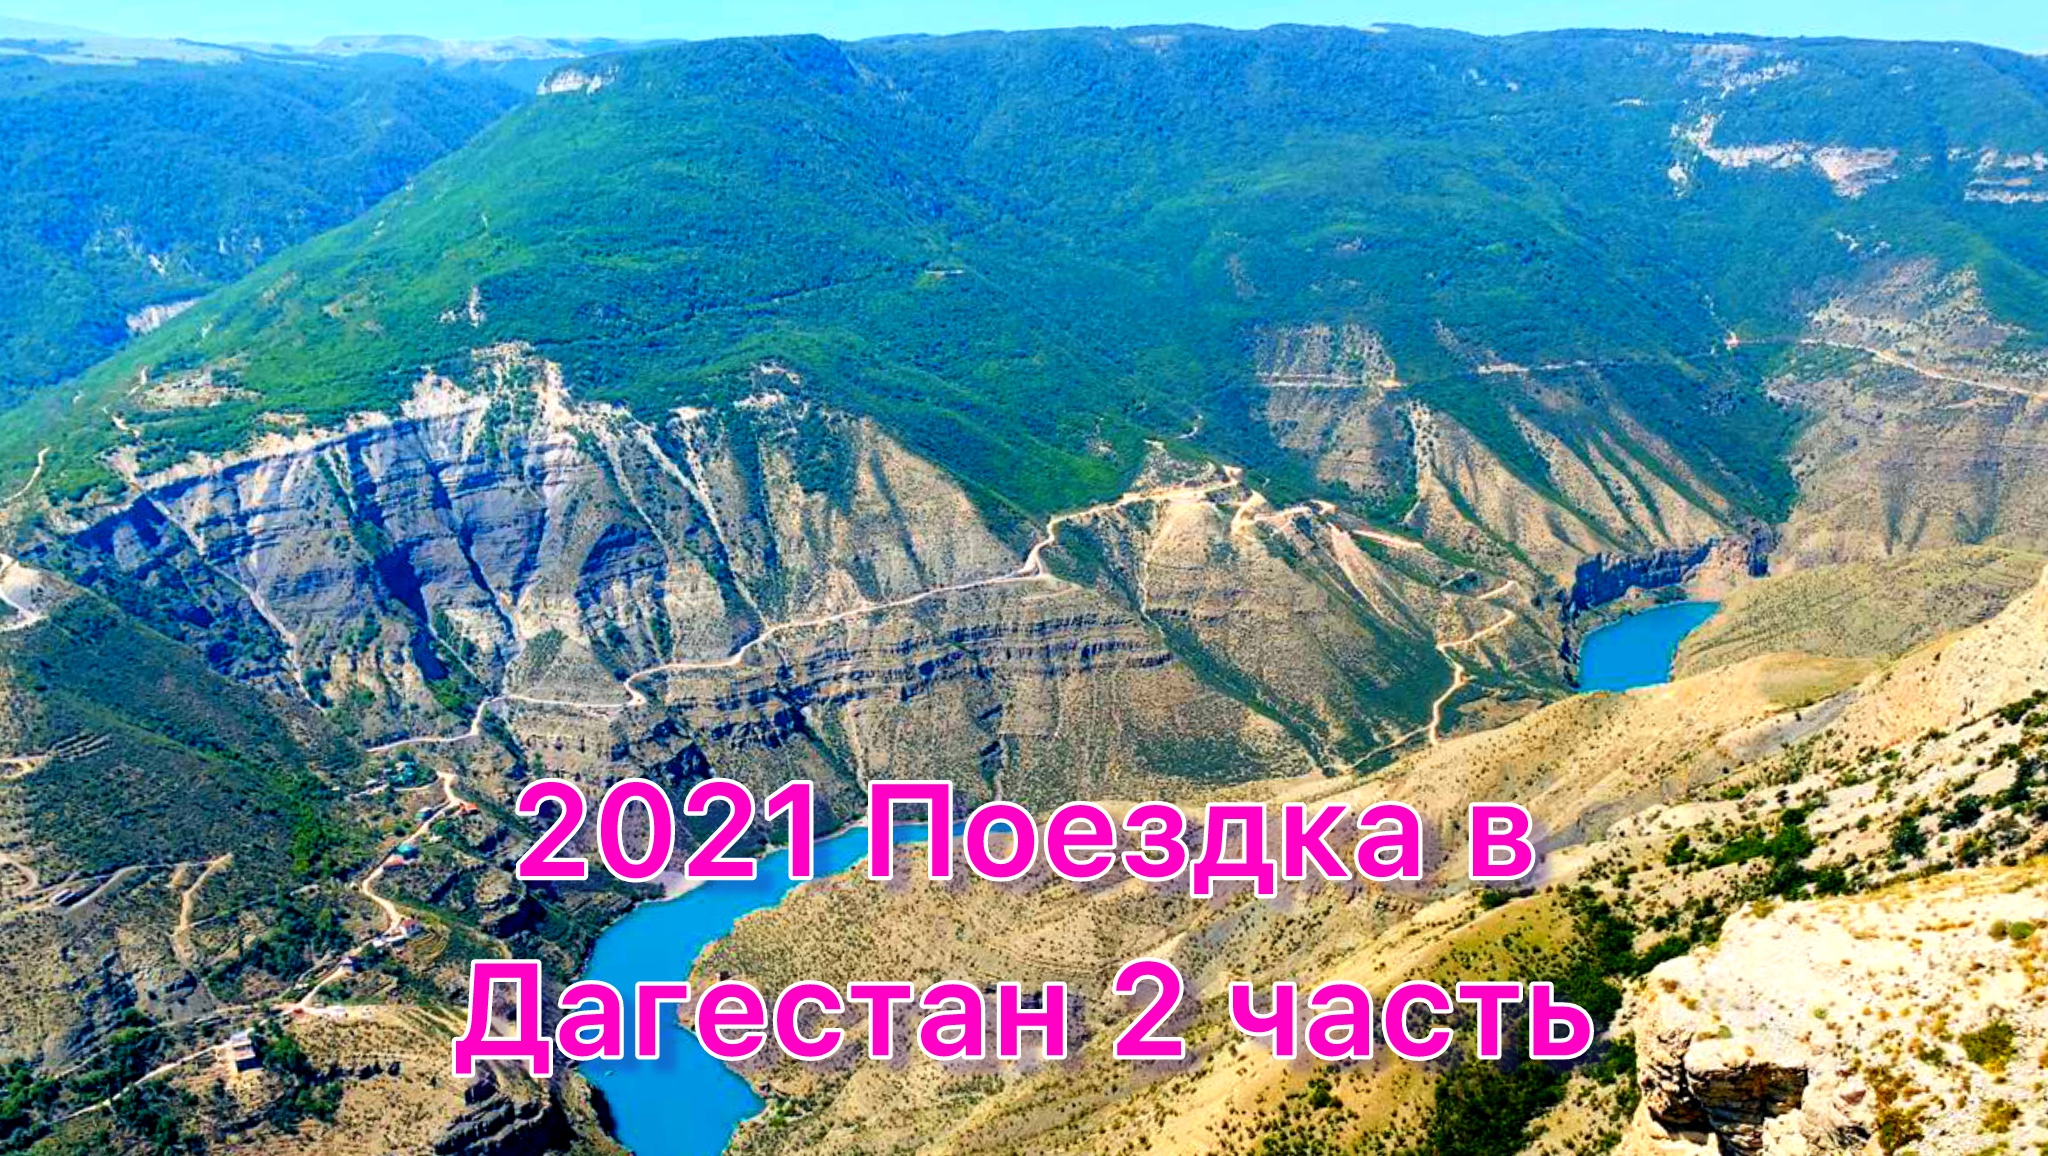 2021 Дагестан 2 часть